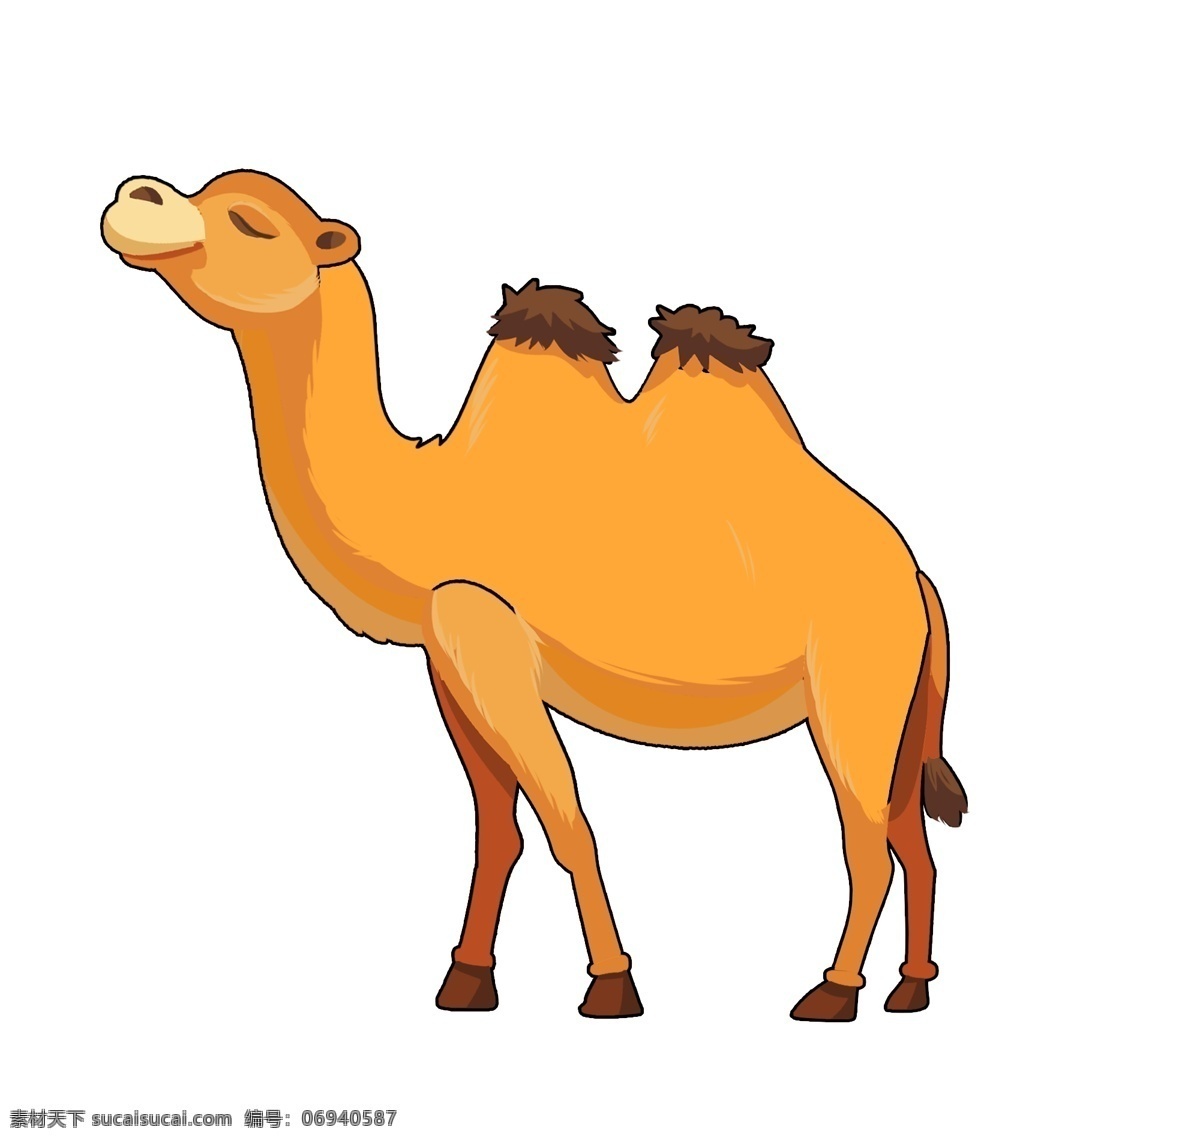 骆驼插画图片 骆驼 骆驼插画 插图 沙漠骆驼插画 可爱插画 插画 手绘 简笔画 晓雪设计 卡通插画 艺术插画 抽象插画 动漫动画